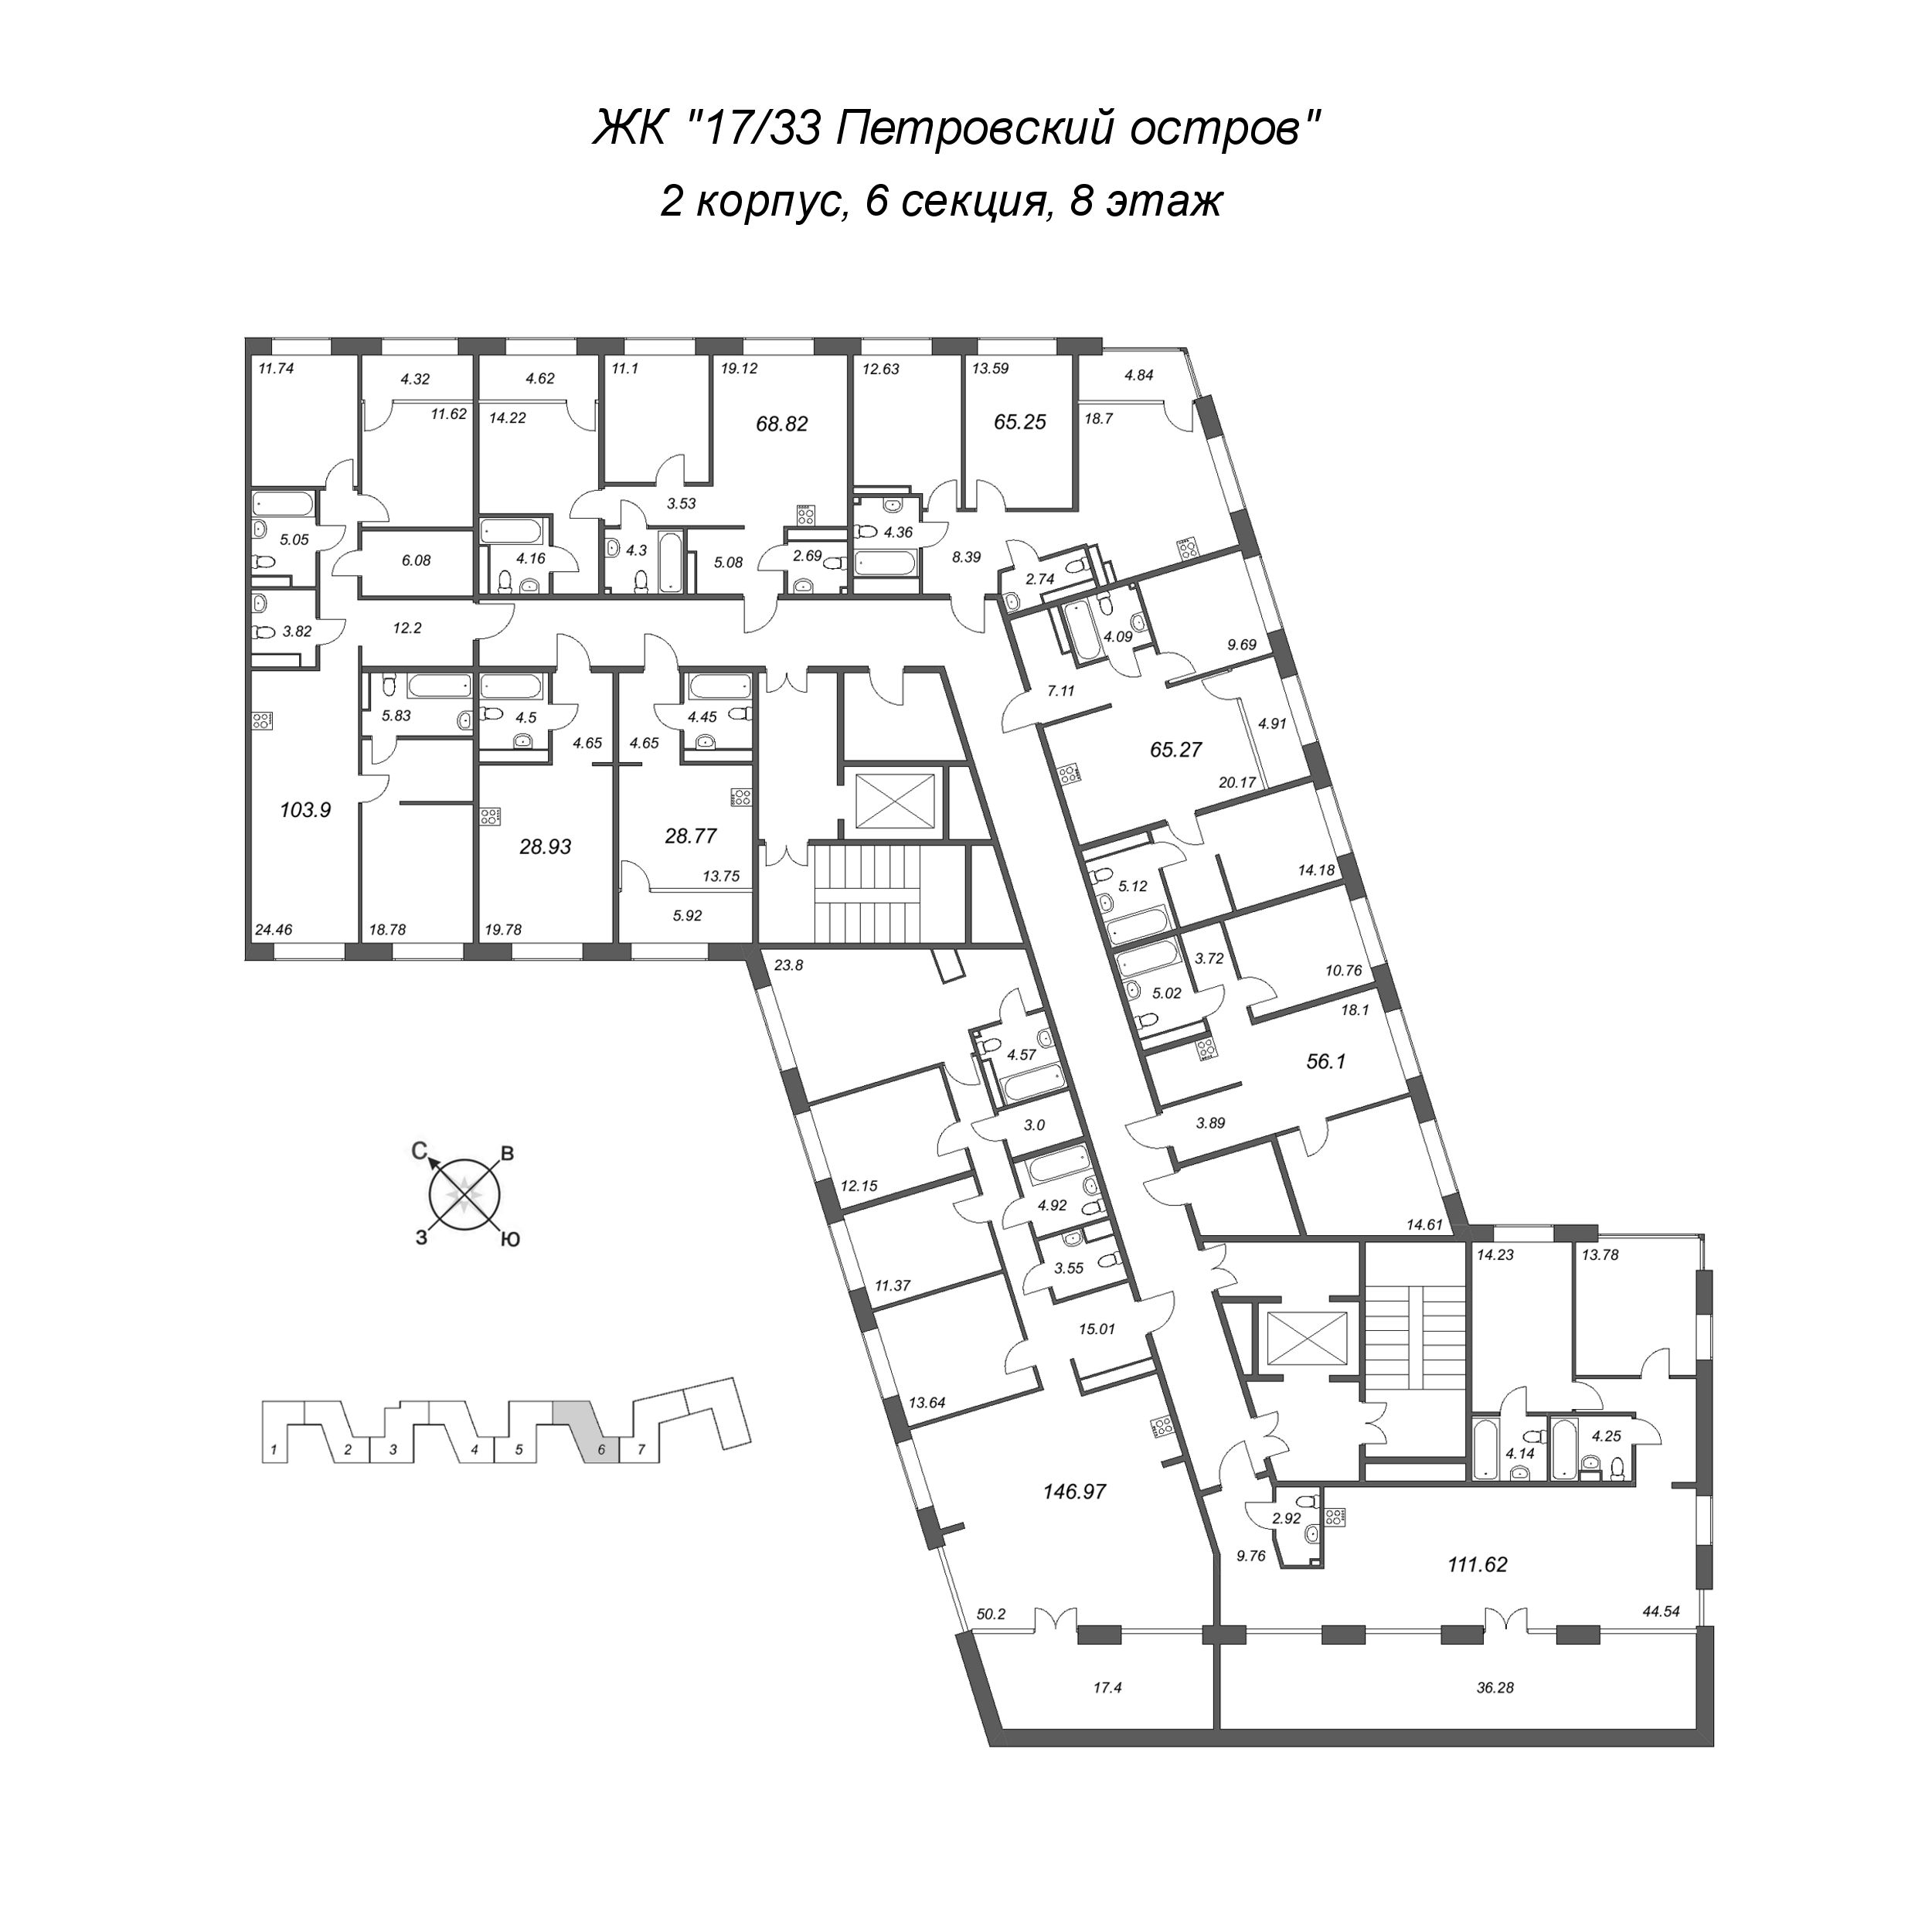 3-комнатная (Евро) квартира, 56.1 м² в ЖК "17/33 Петровский остров" - планировка этажа